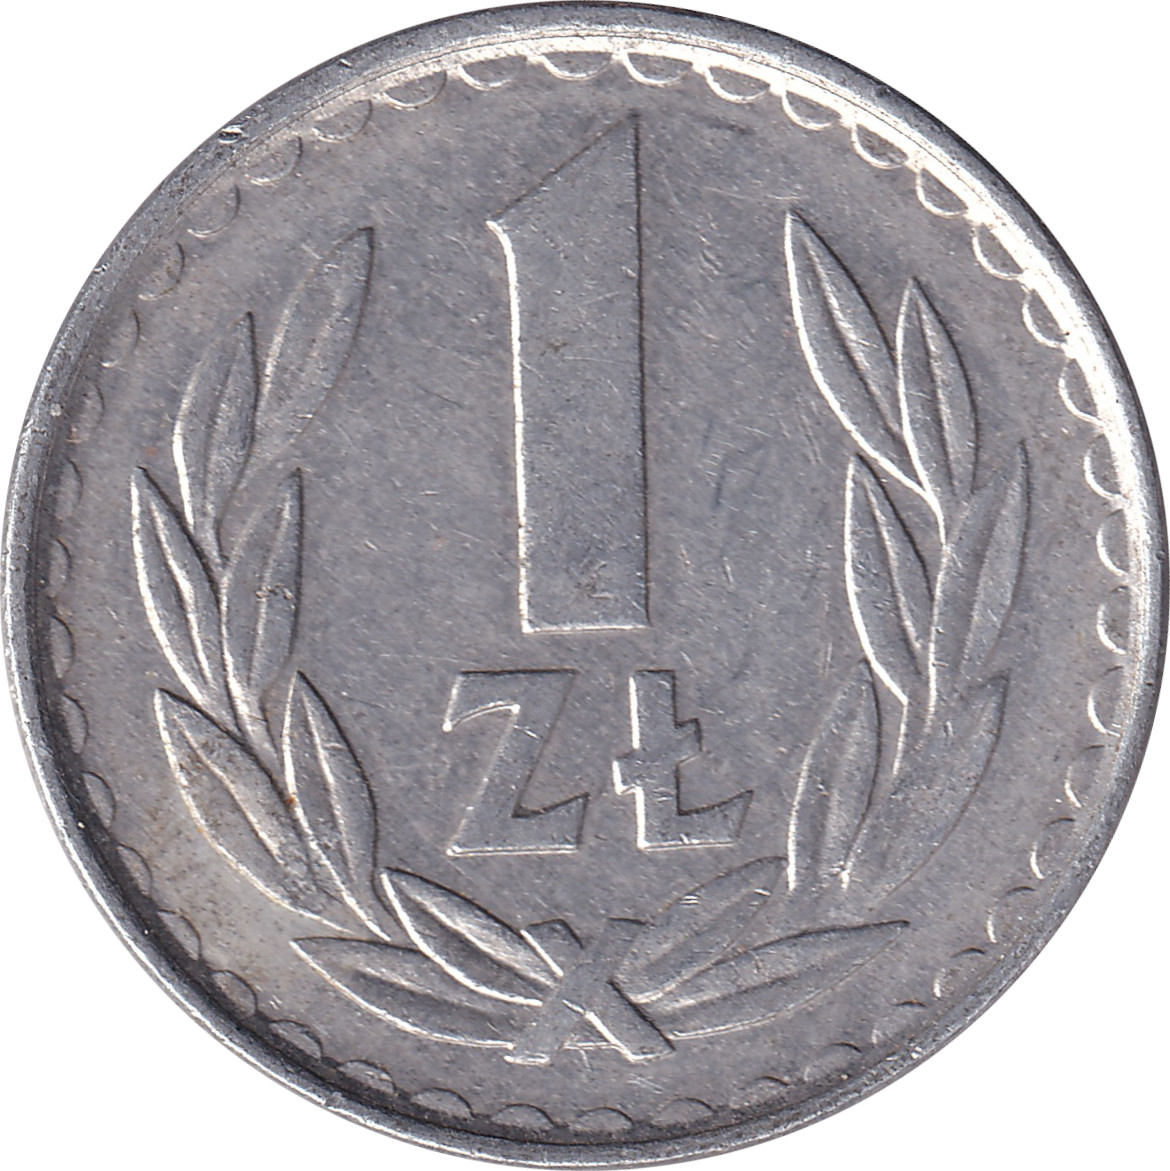 1 zloty - République populaire - Type 2